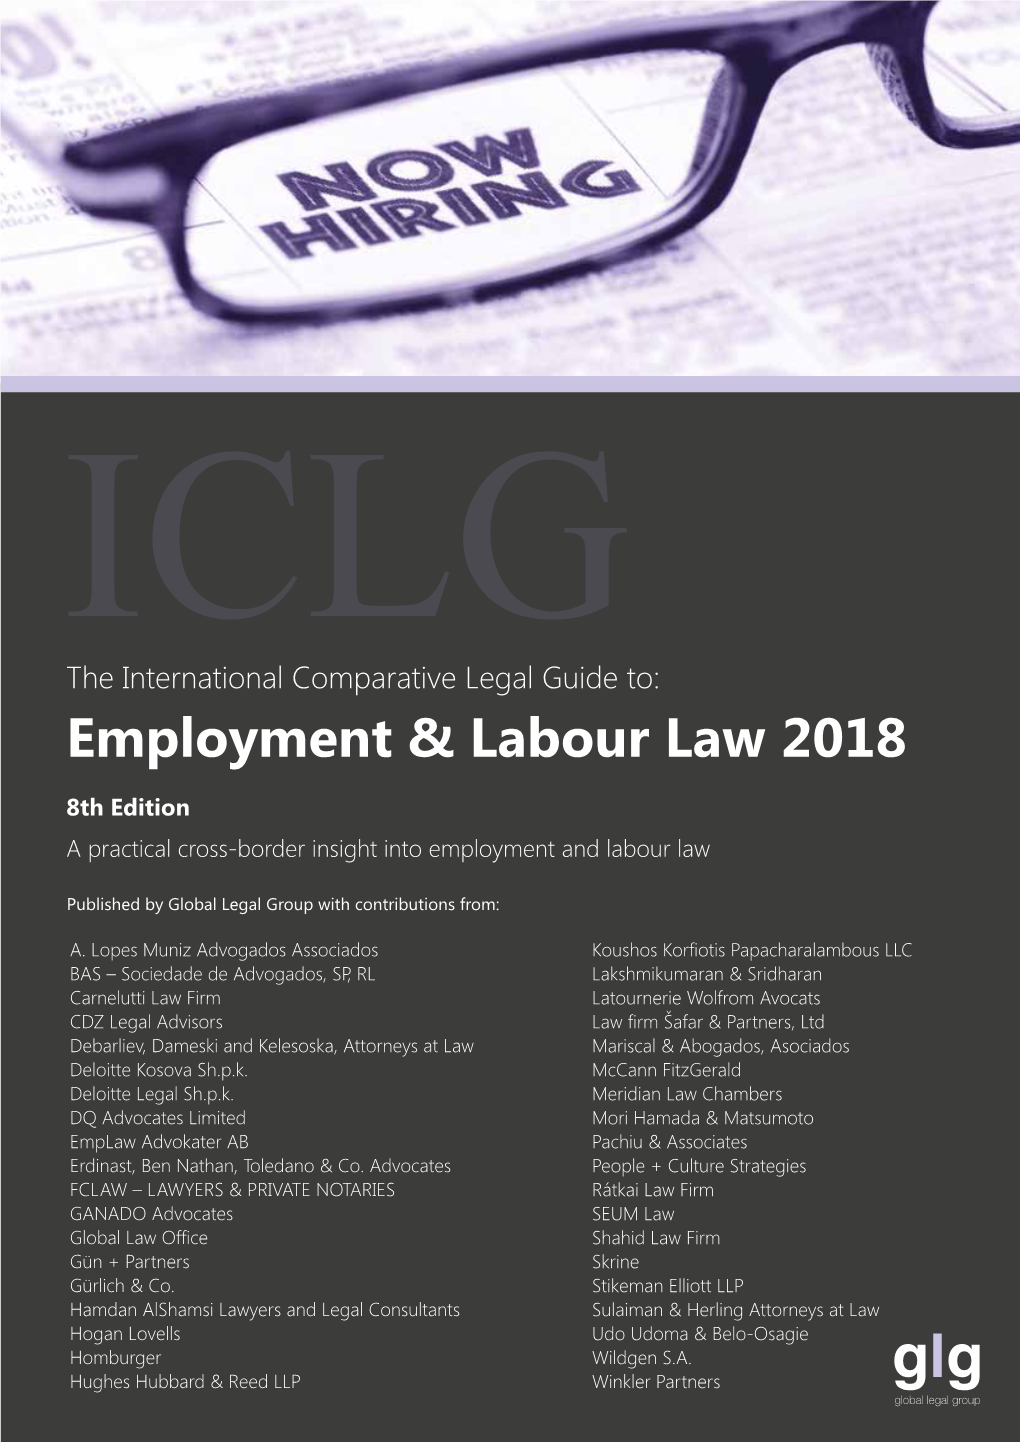 Employment & Labour Law 2018